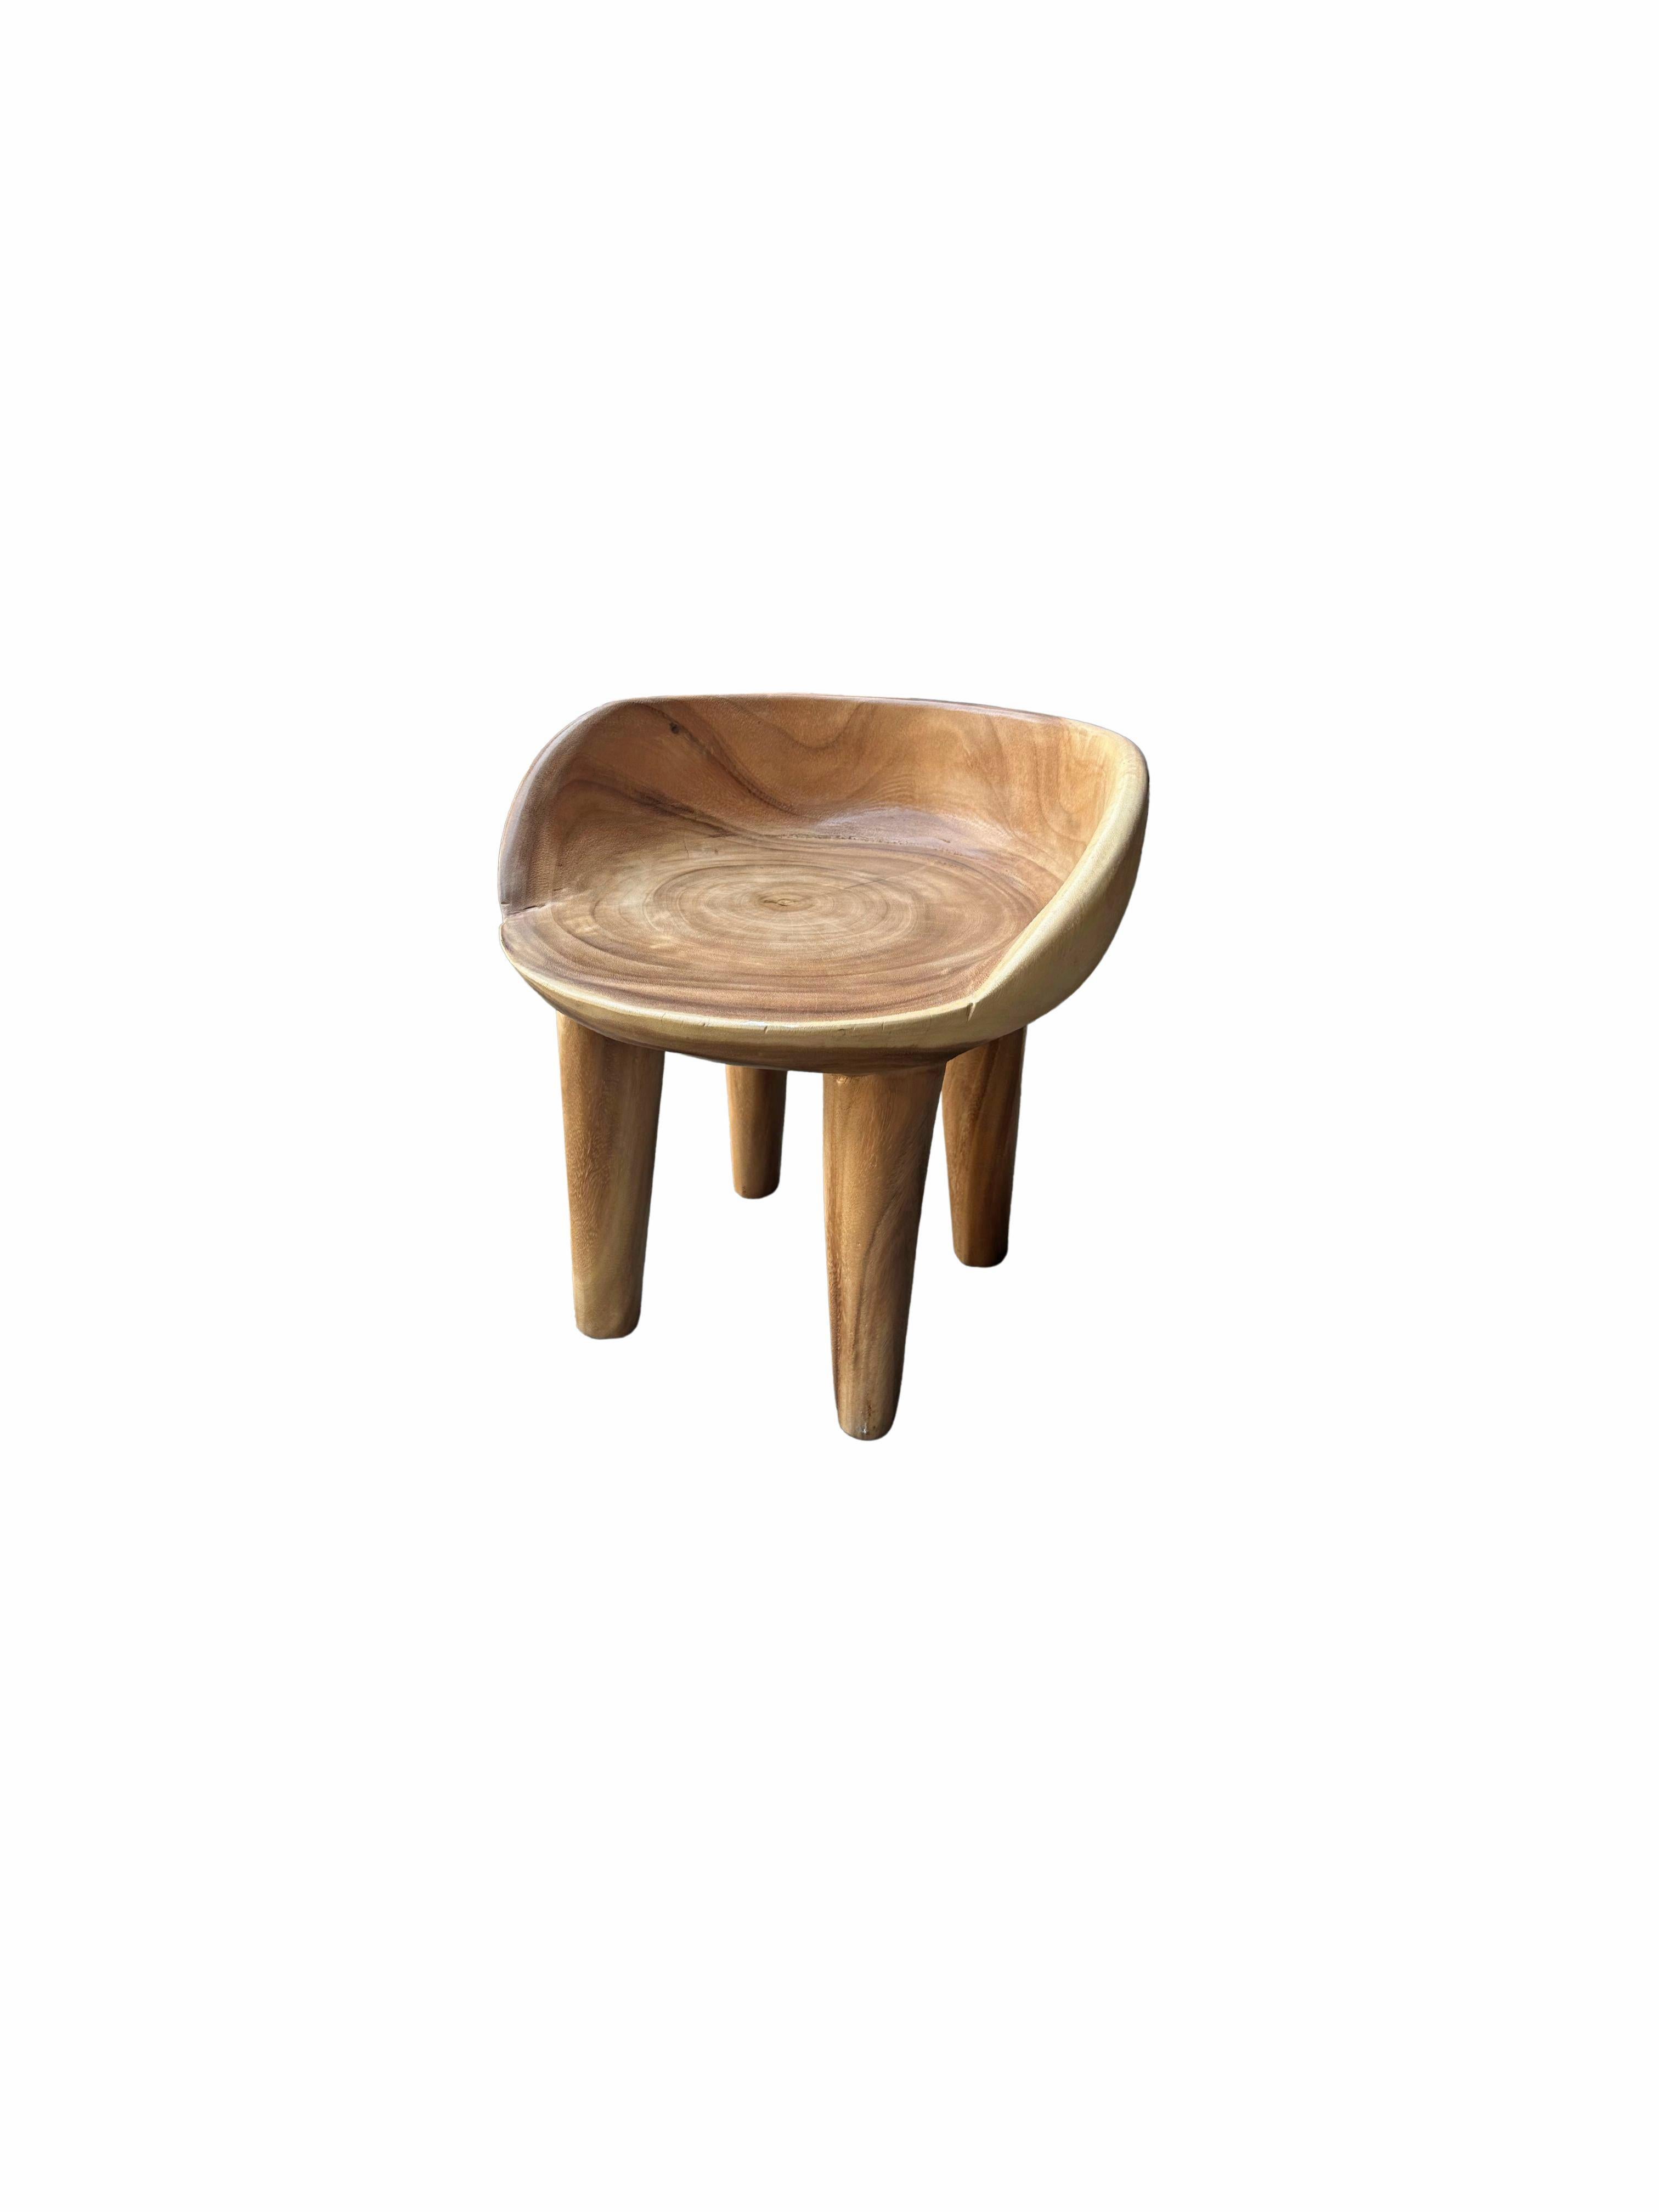 Dieser wunderbare skulpturale Stuhl wurde aus einem einzigen Block Suarholz gefertigt. Der Stuhl ruht auf 4 schlanken Beinen. Durch seine neutrale Pigmentierung passt er perfekt in jeden Raum. Dieser Stuhl ist naturbelassen und klar lackiert. Es